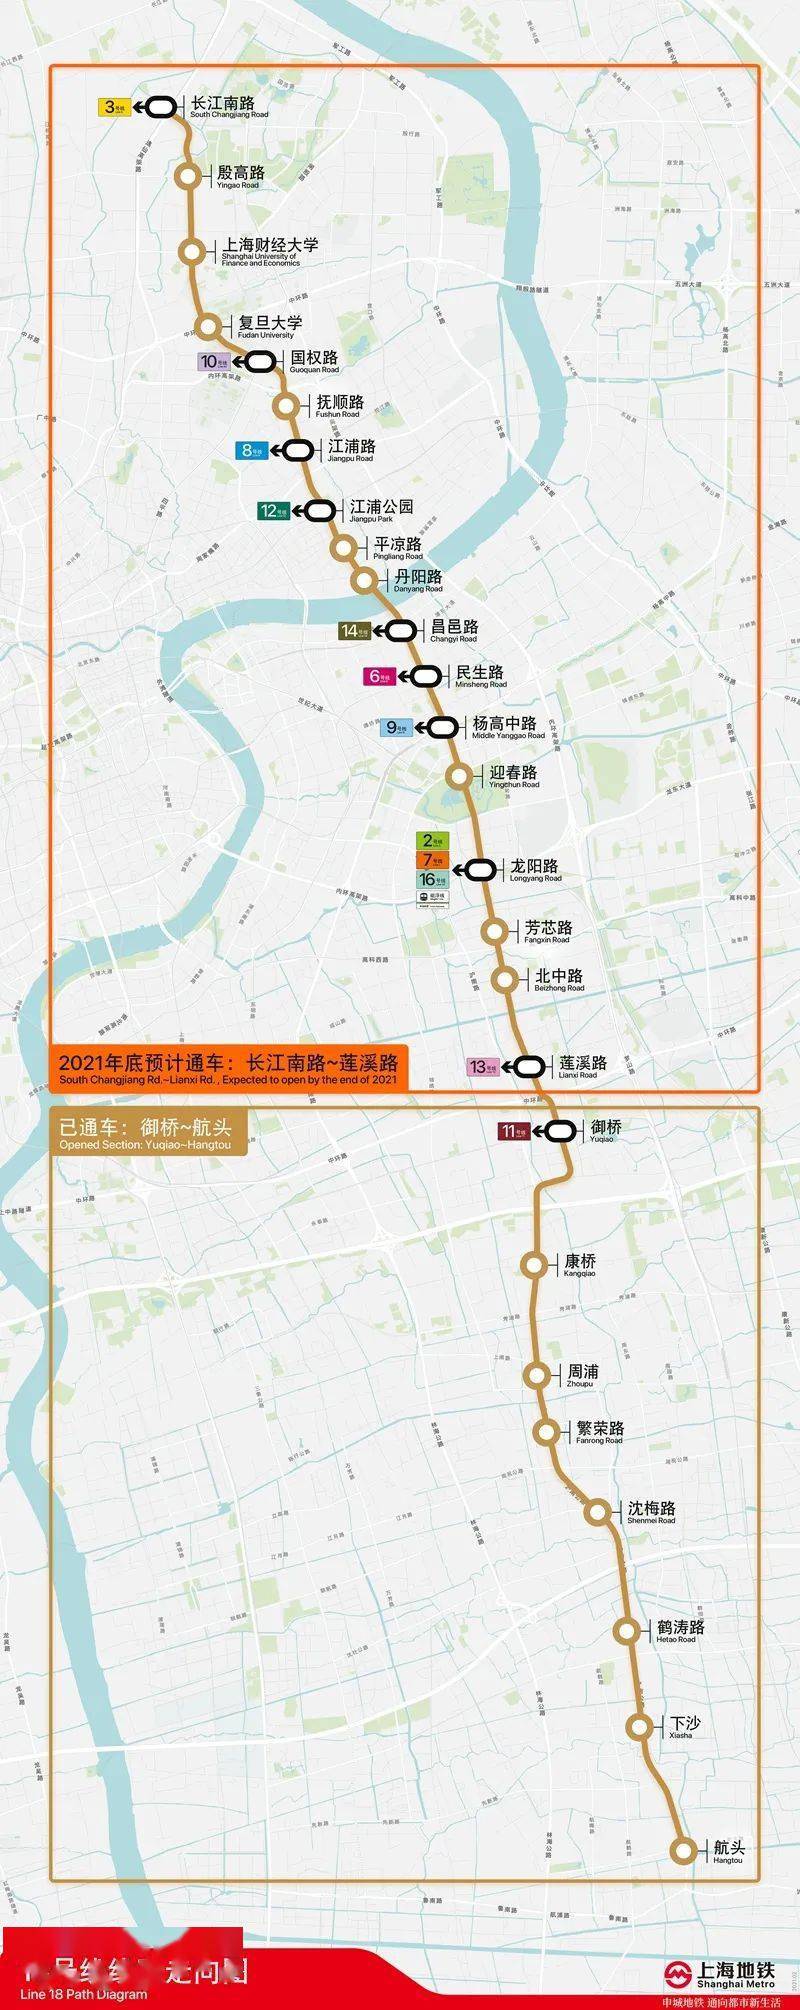 18号线一期北段途经 浦东,杨浦,宝山三个区,新增车站 18座,运营里程约